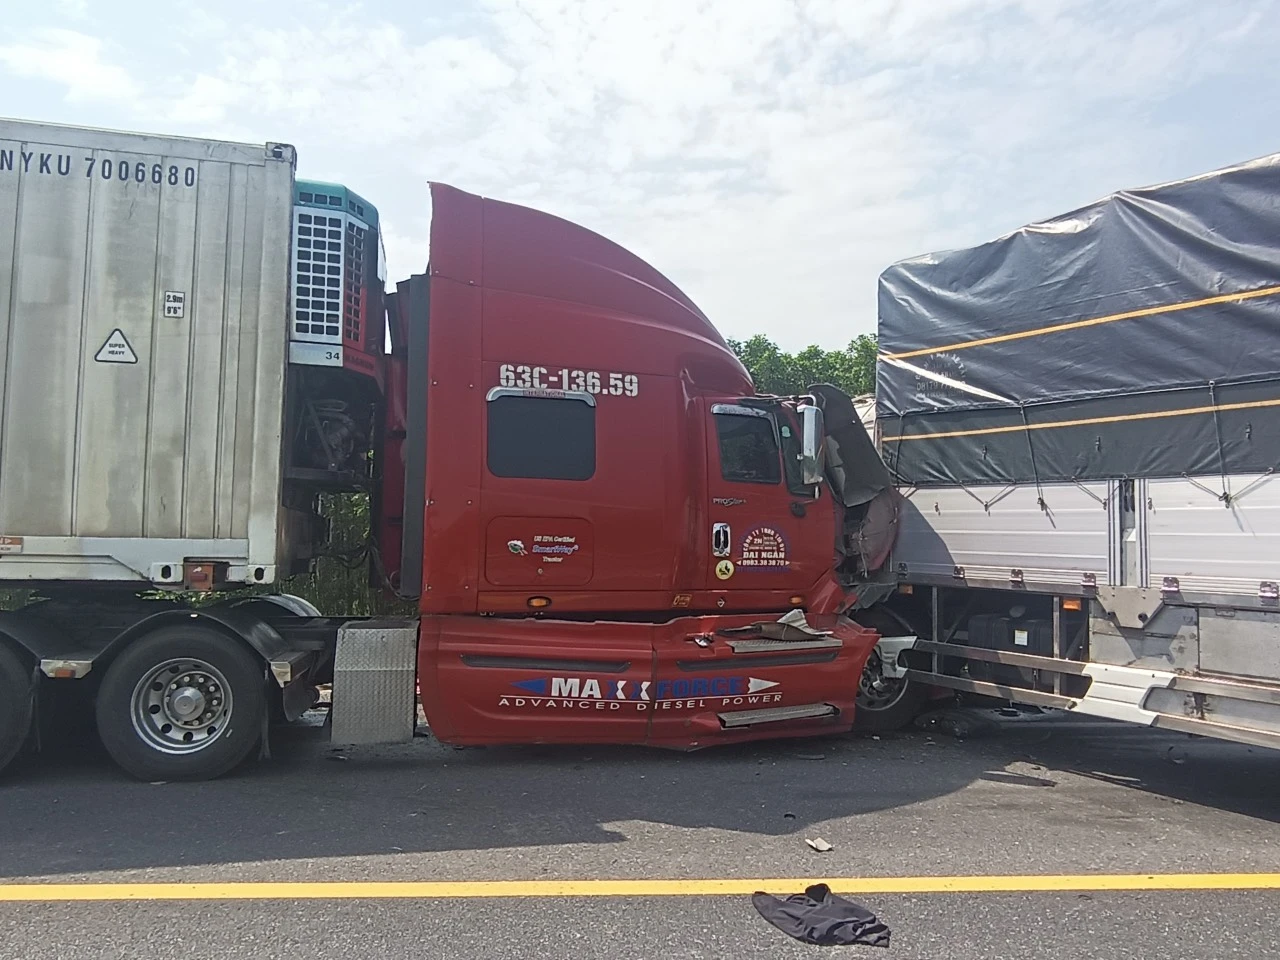 Tai nạn trên cao tốc Cam Lộ - La Sơn khiến 2 người tử vong